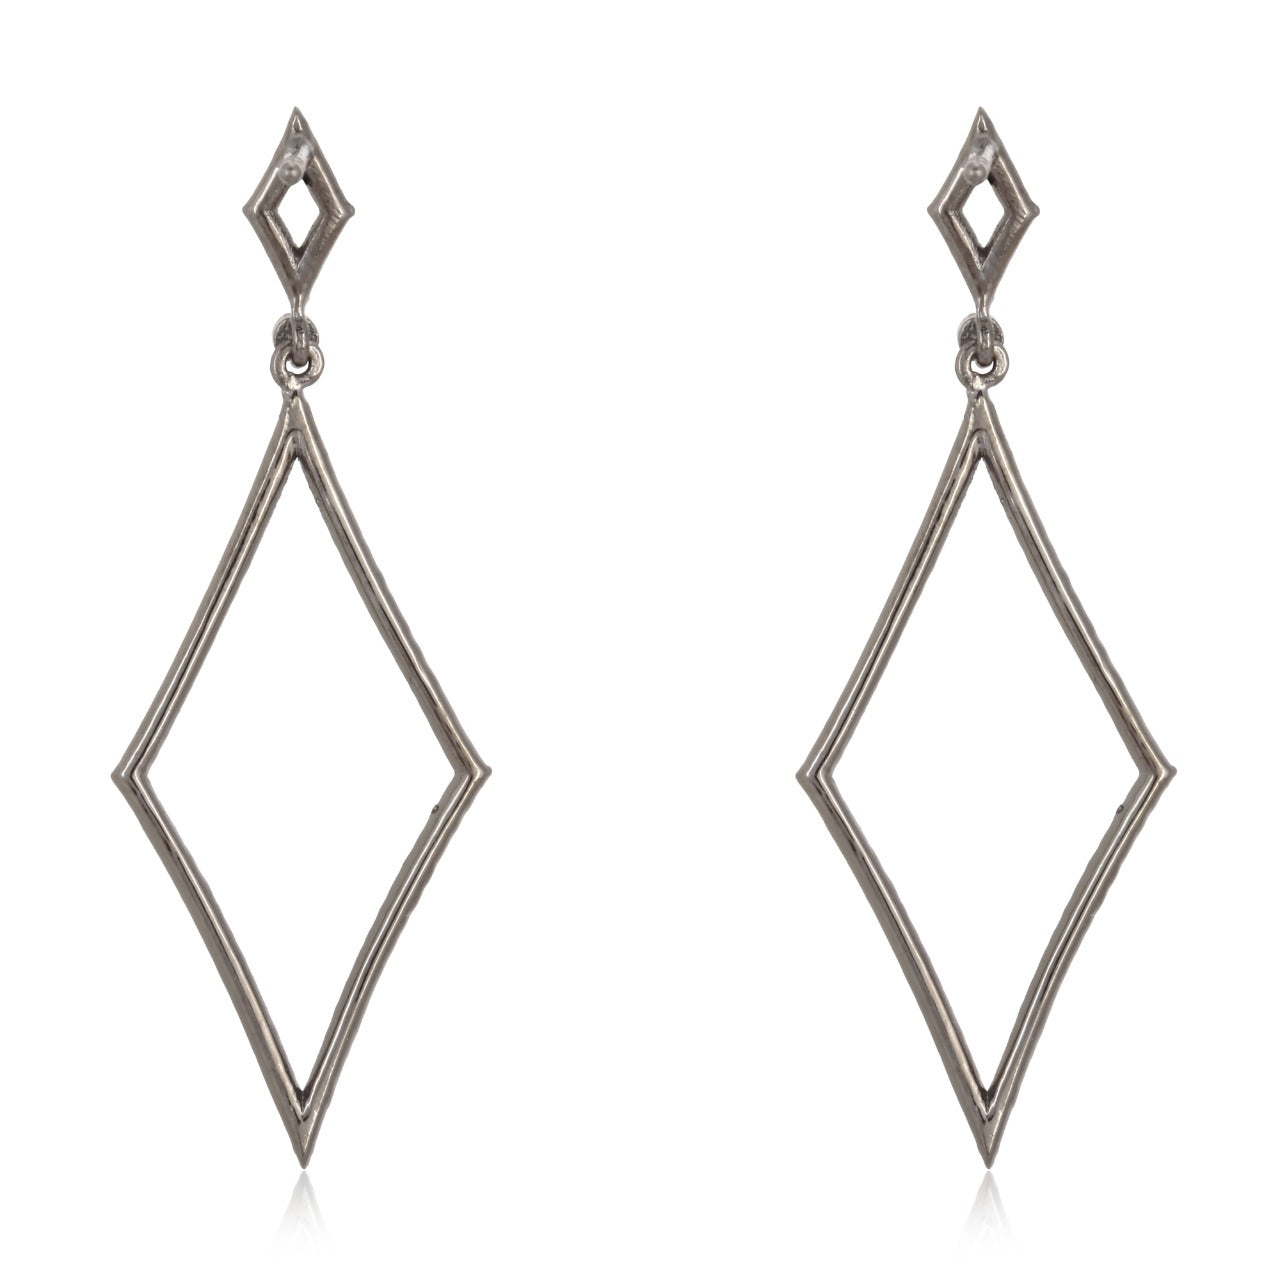 The Rhombus Diamond Pierced Earrings by Roccoco Rich